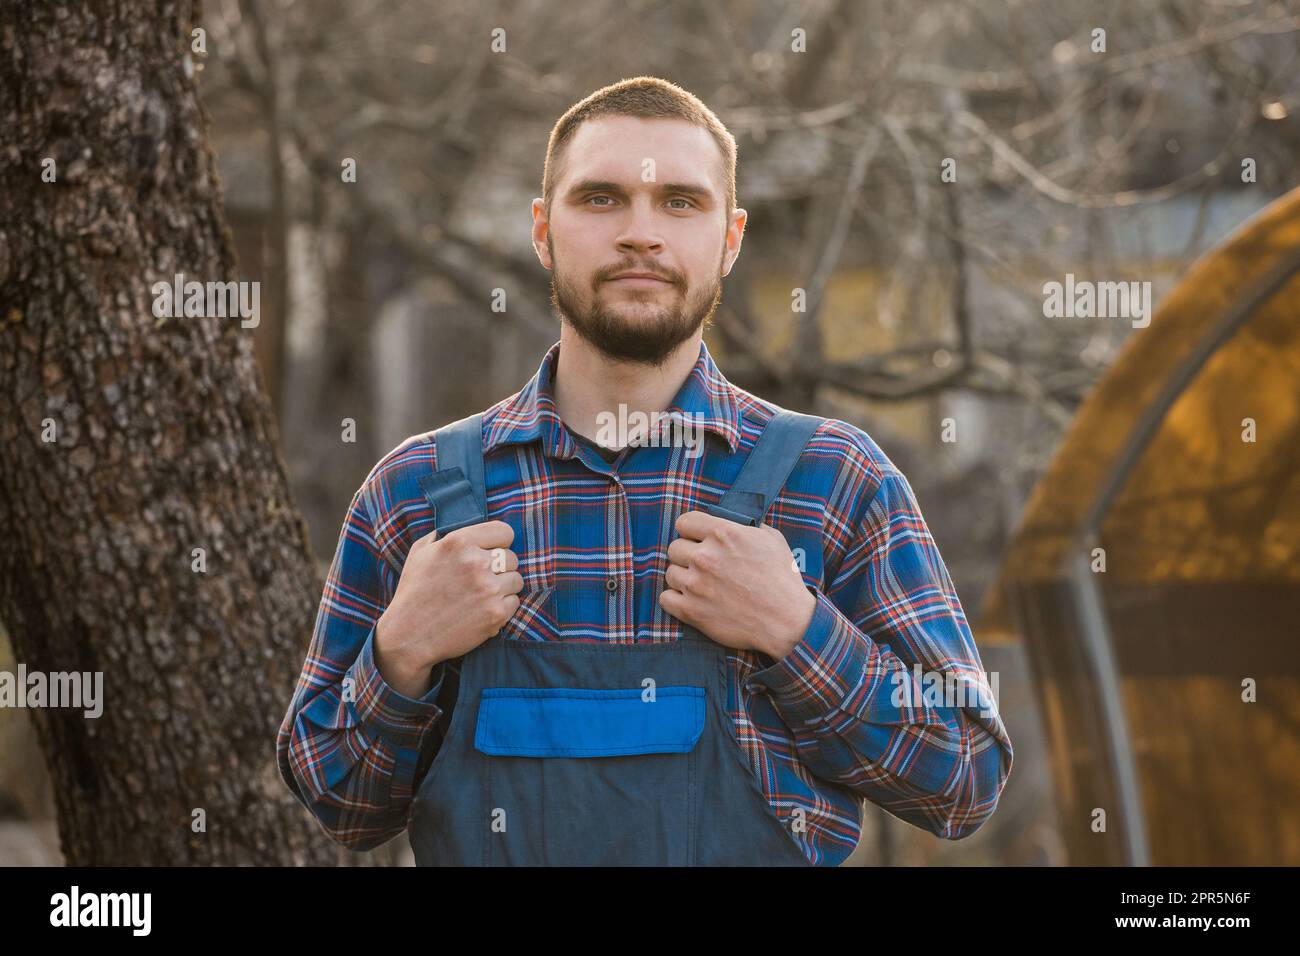 Farmer soddisfatto europeo aspetto maschile ritratto rurale con barba, camicia e tute uomo guardando la fotocamera all'aperto. Foto Stock